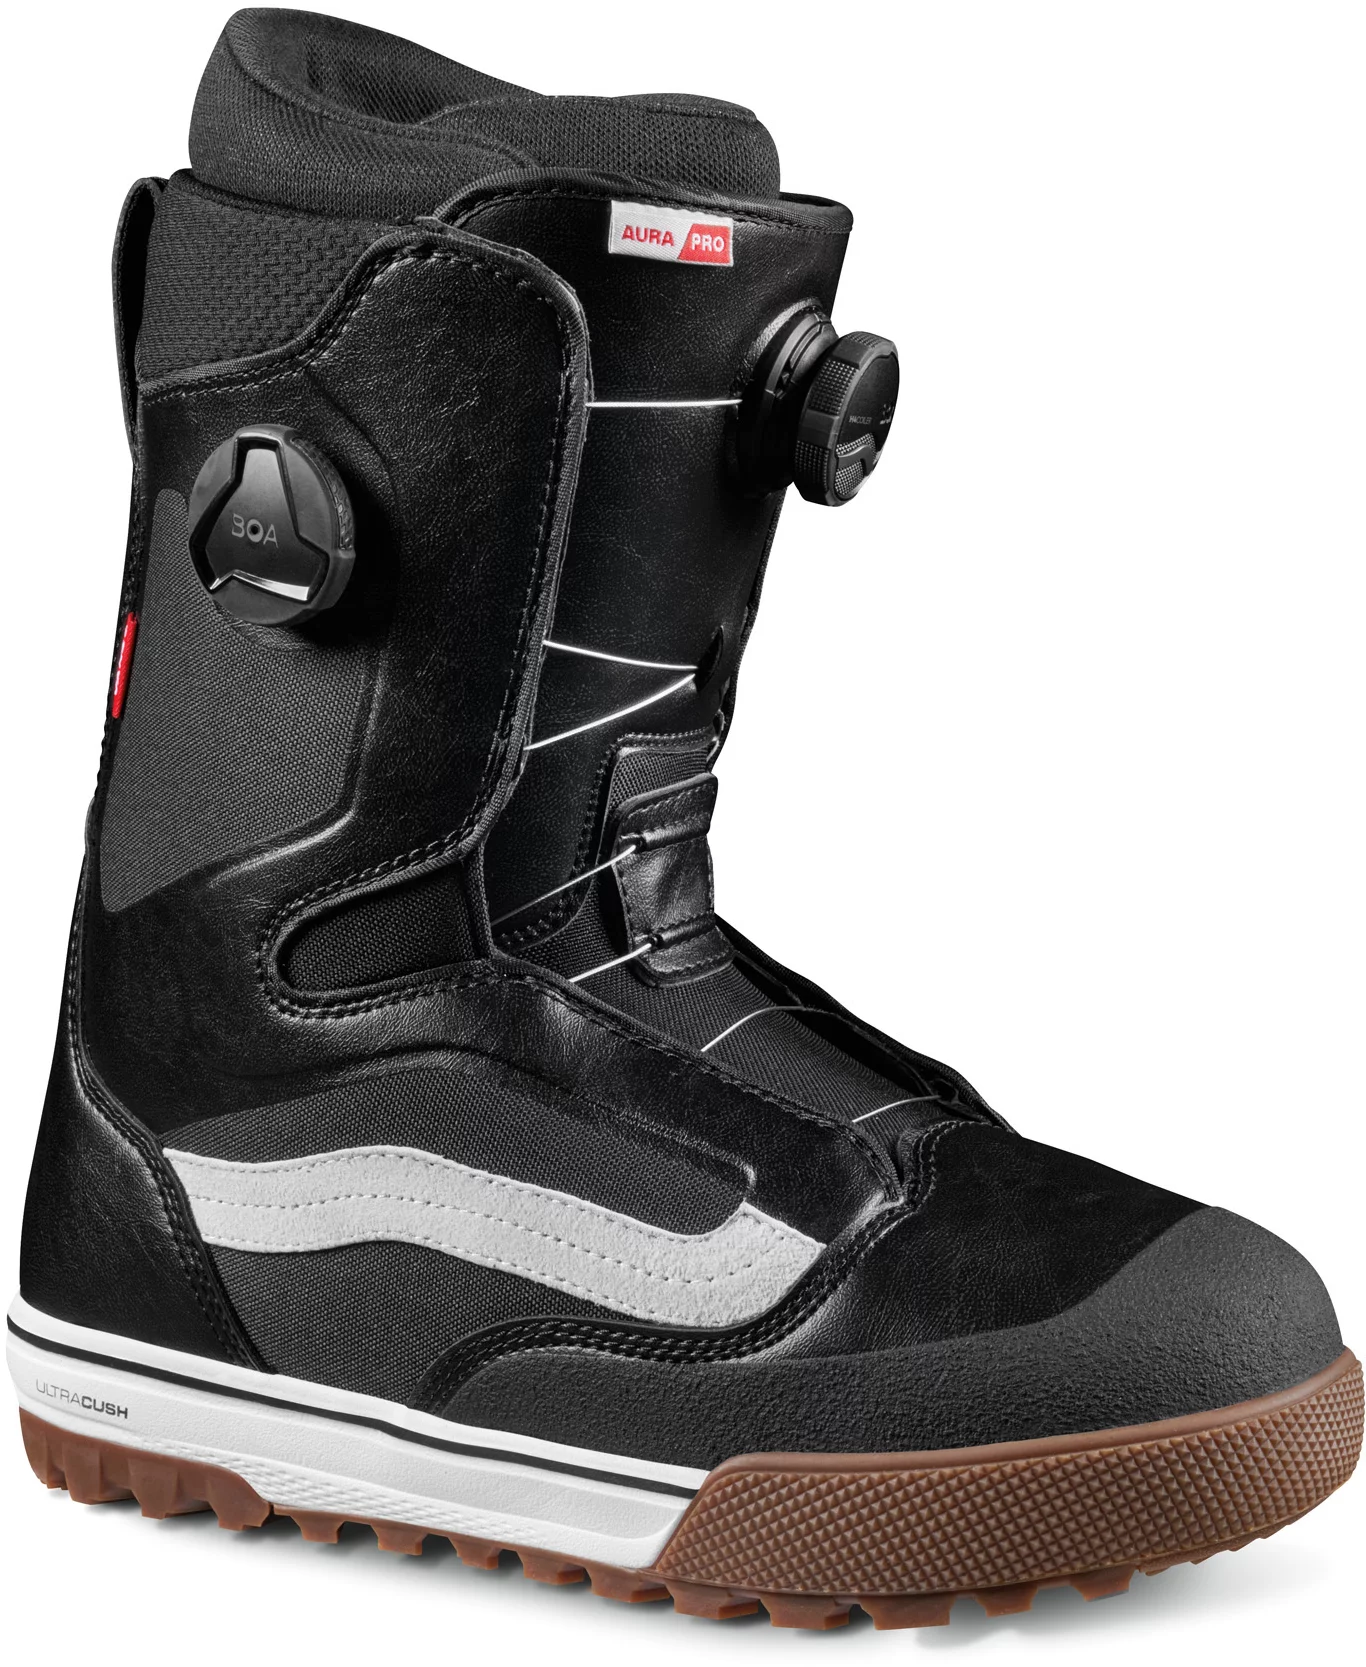 Details about   Vans Aura Pro 2020 Men's Size 9 Snowboard Boots Burgundy Black Double Boa 